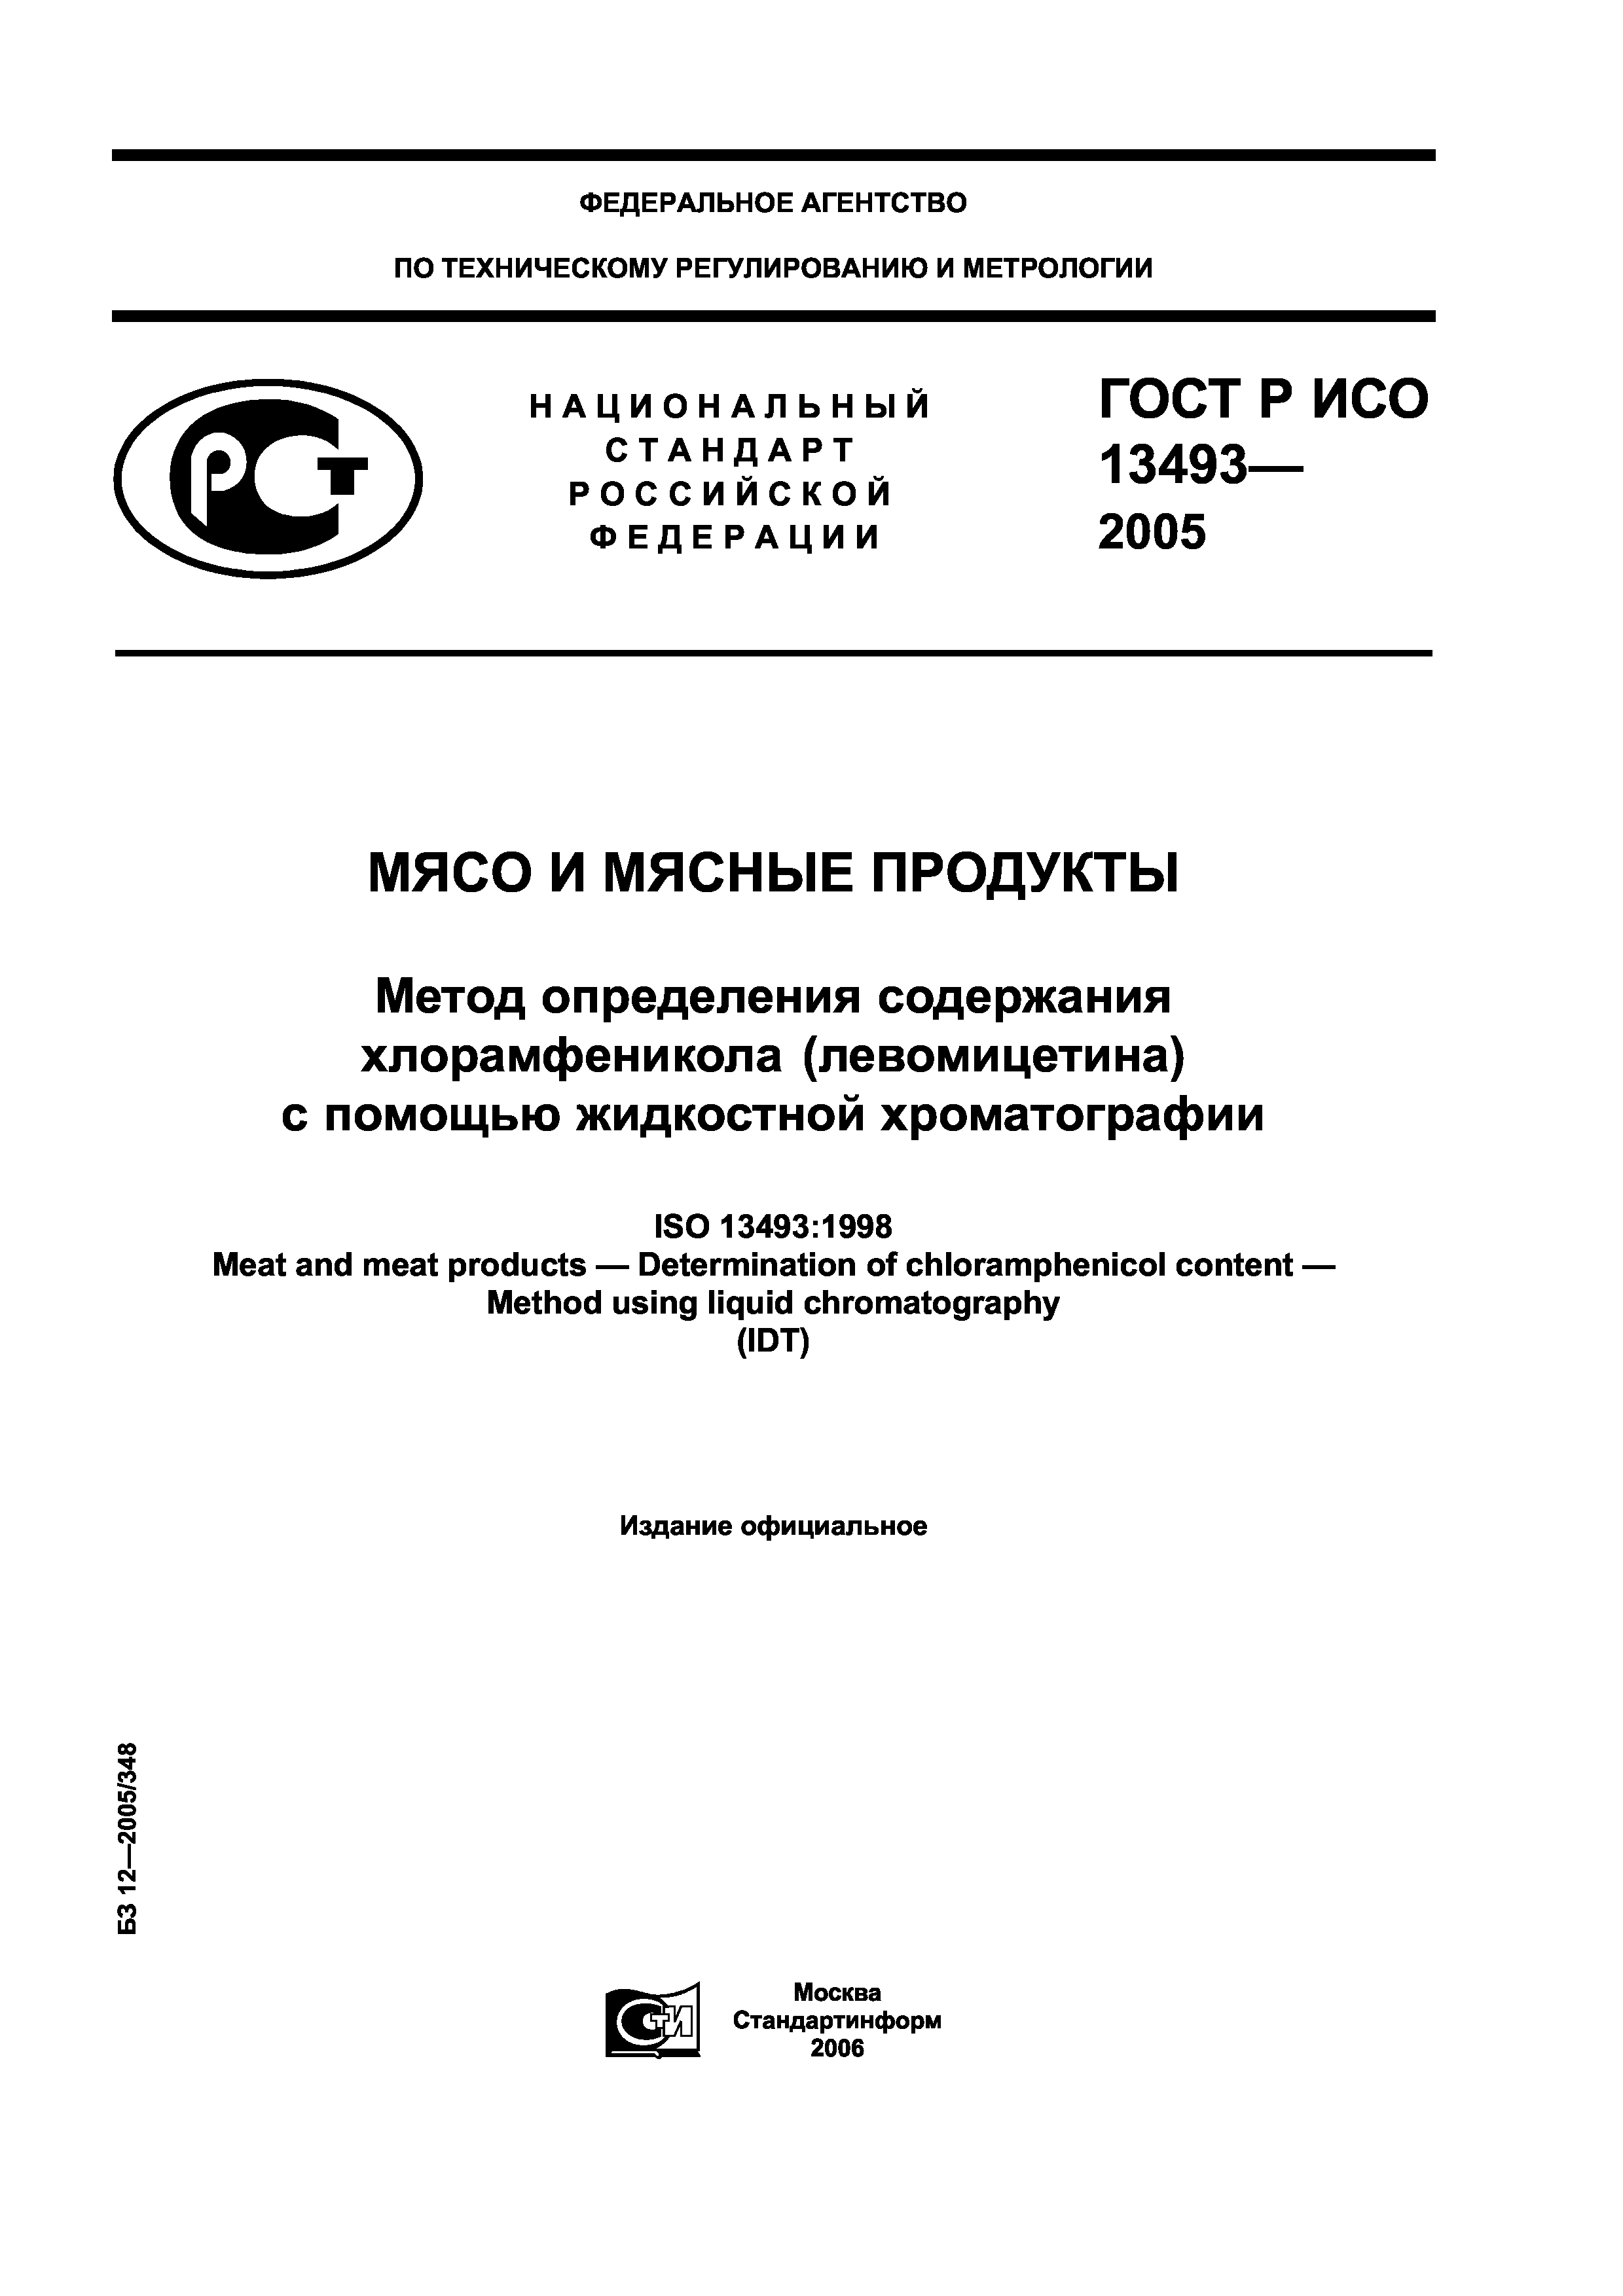 ГОСТ Р ИСО 13493-2005